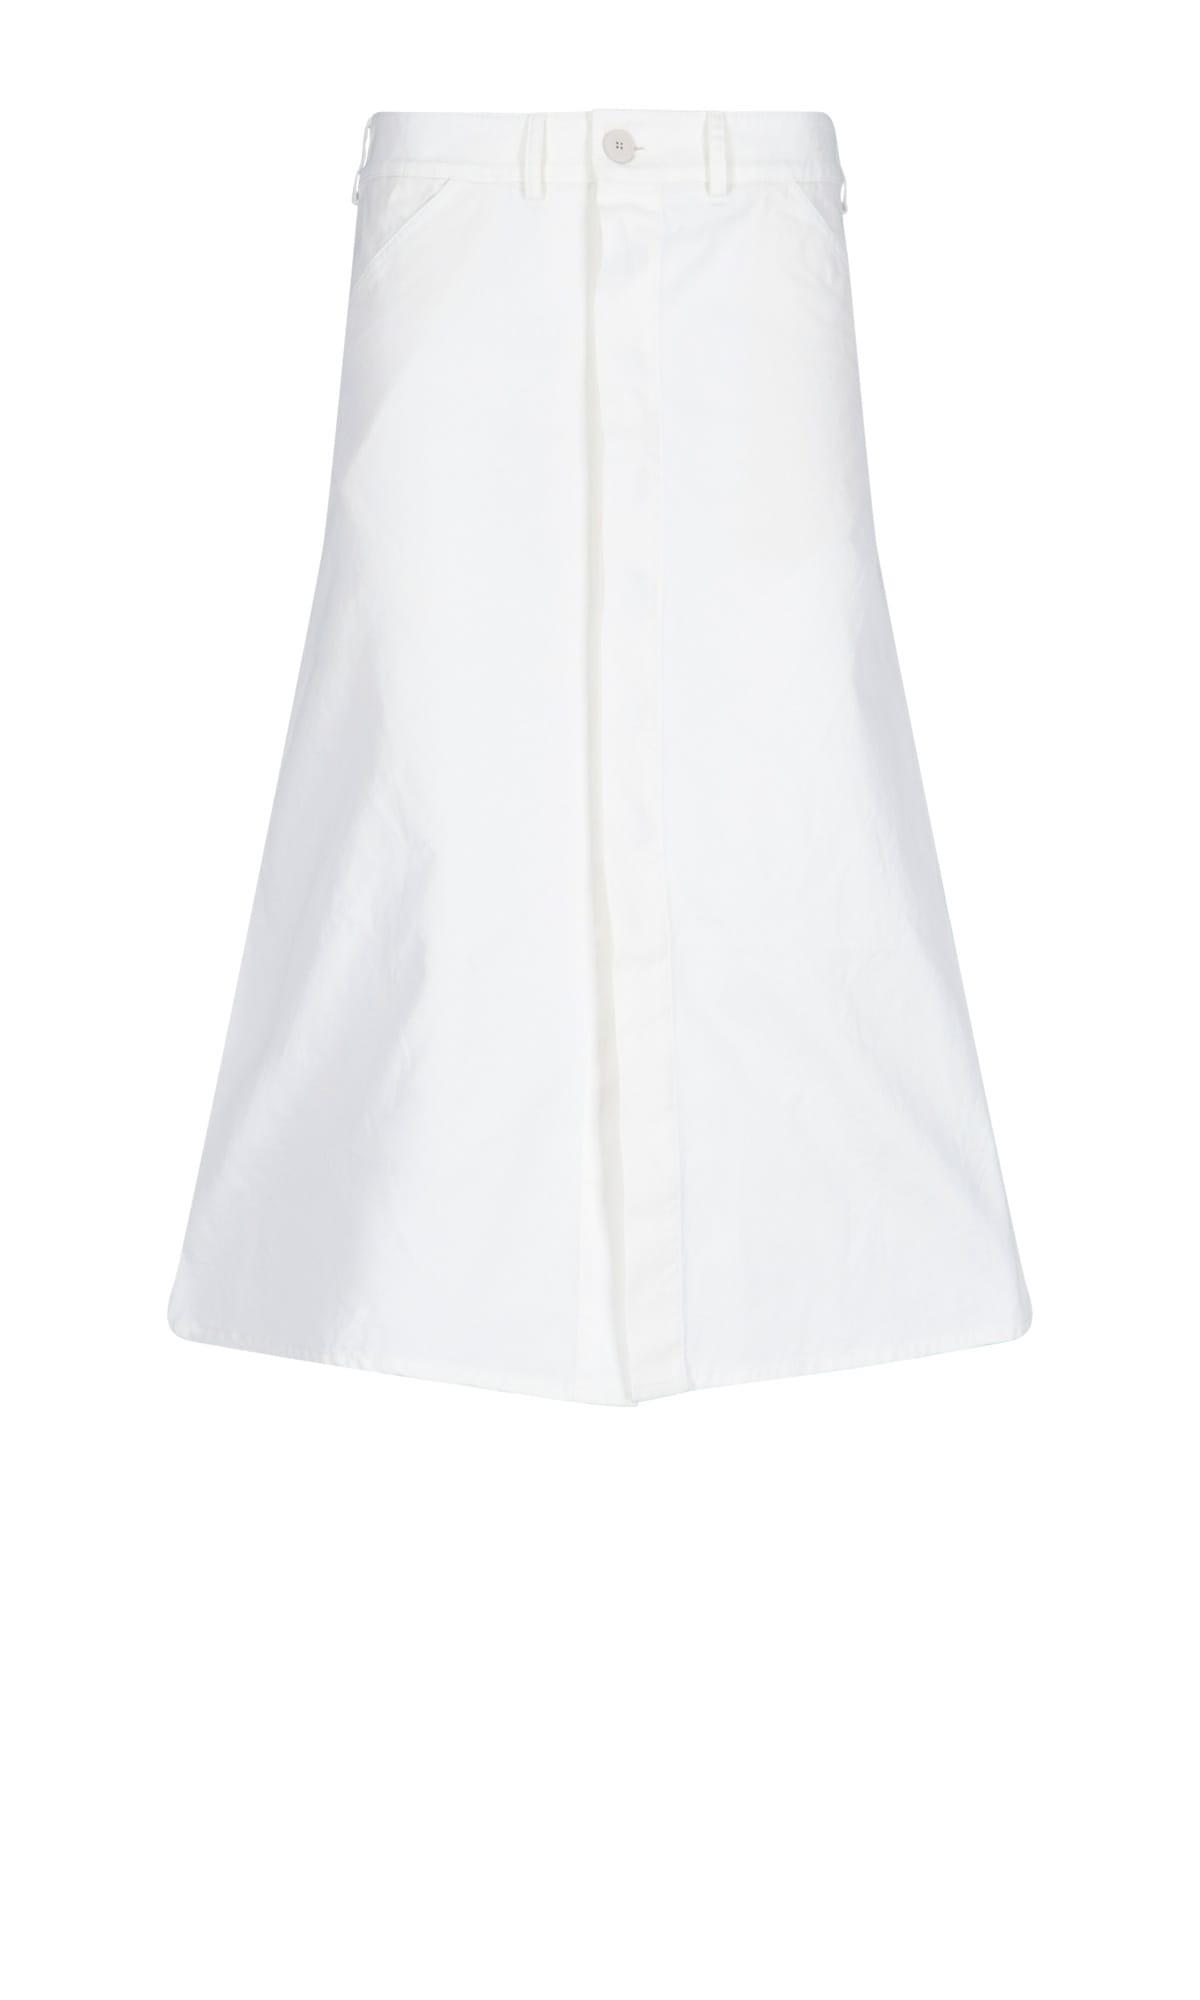 Sibel Saral Skirt In White